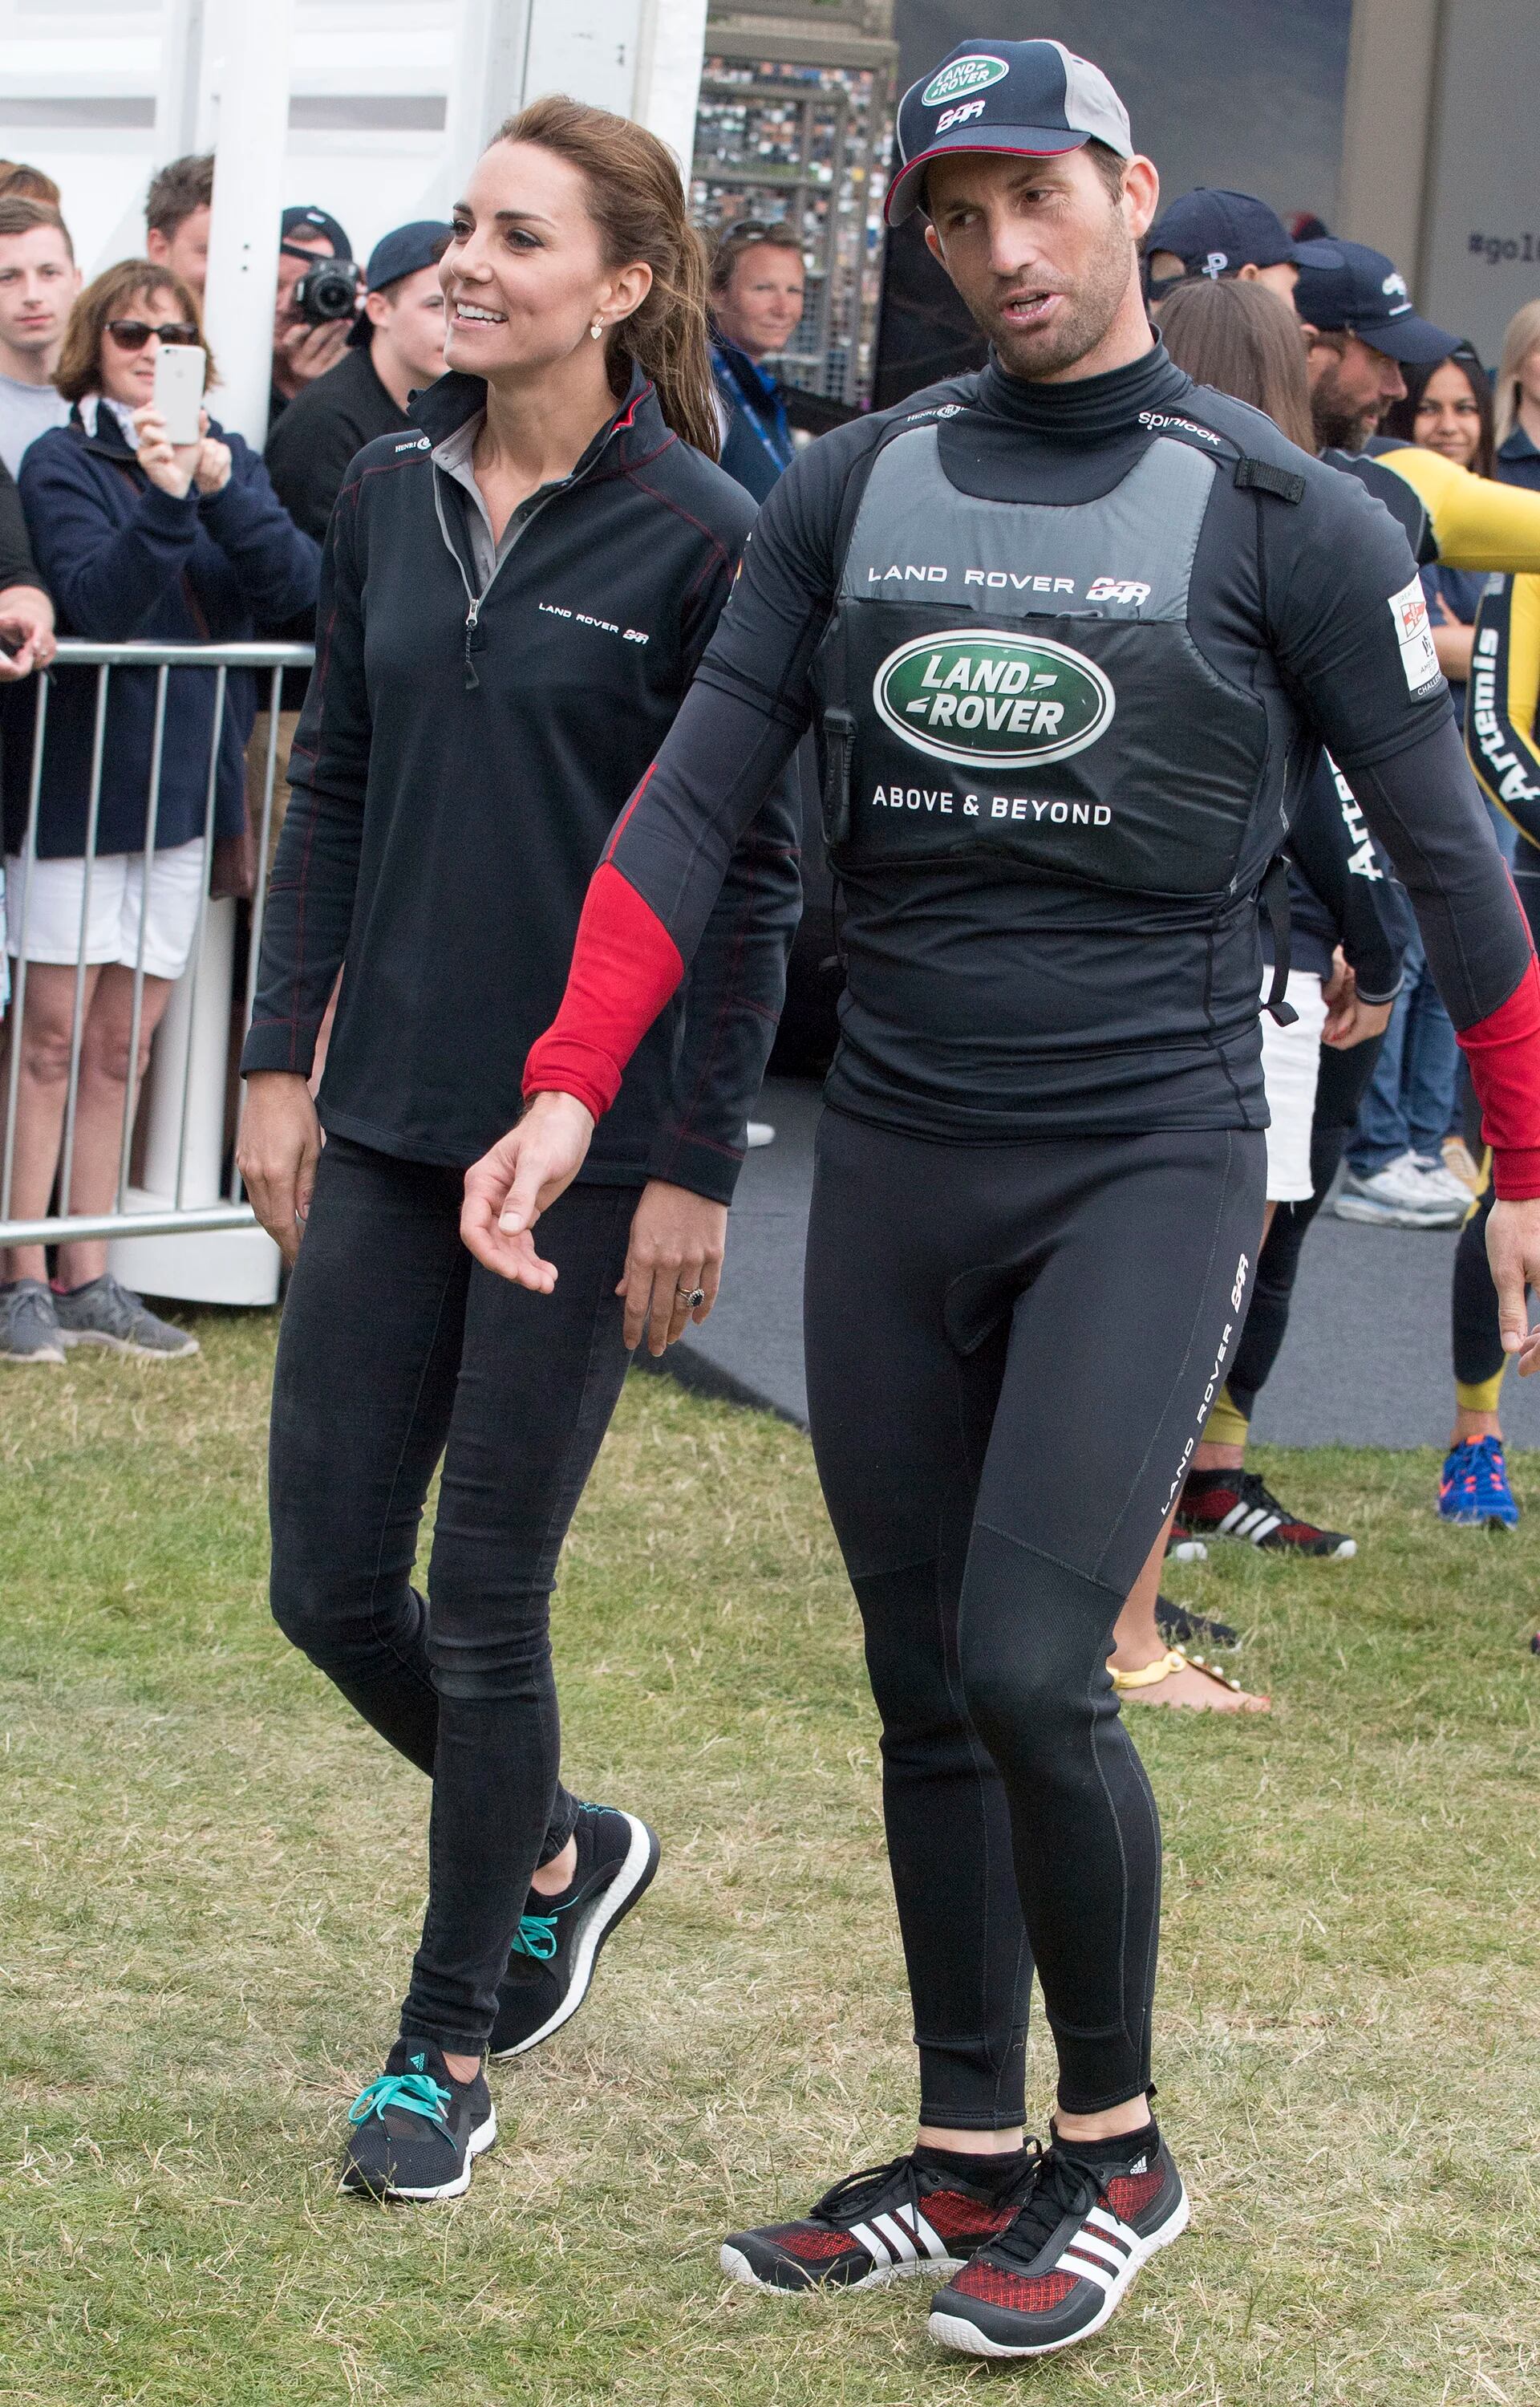 Catalina junto a Ben Ainslie, líder del equipo ganador, en un recorrido por los alrededores de la carrera que se llevó a cabo en Portsmouth, al sur de Inglaterra